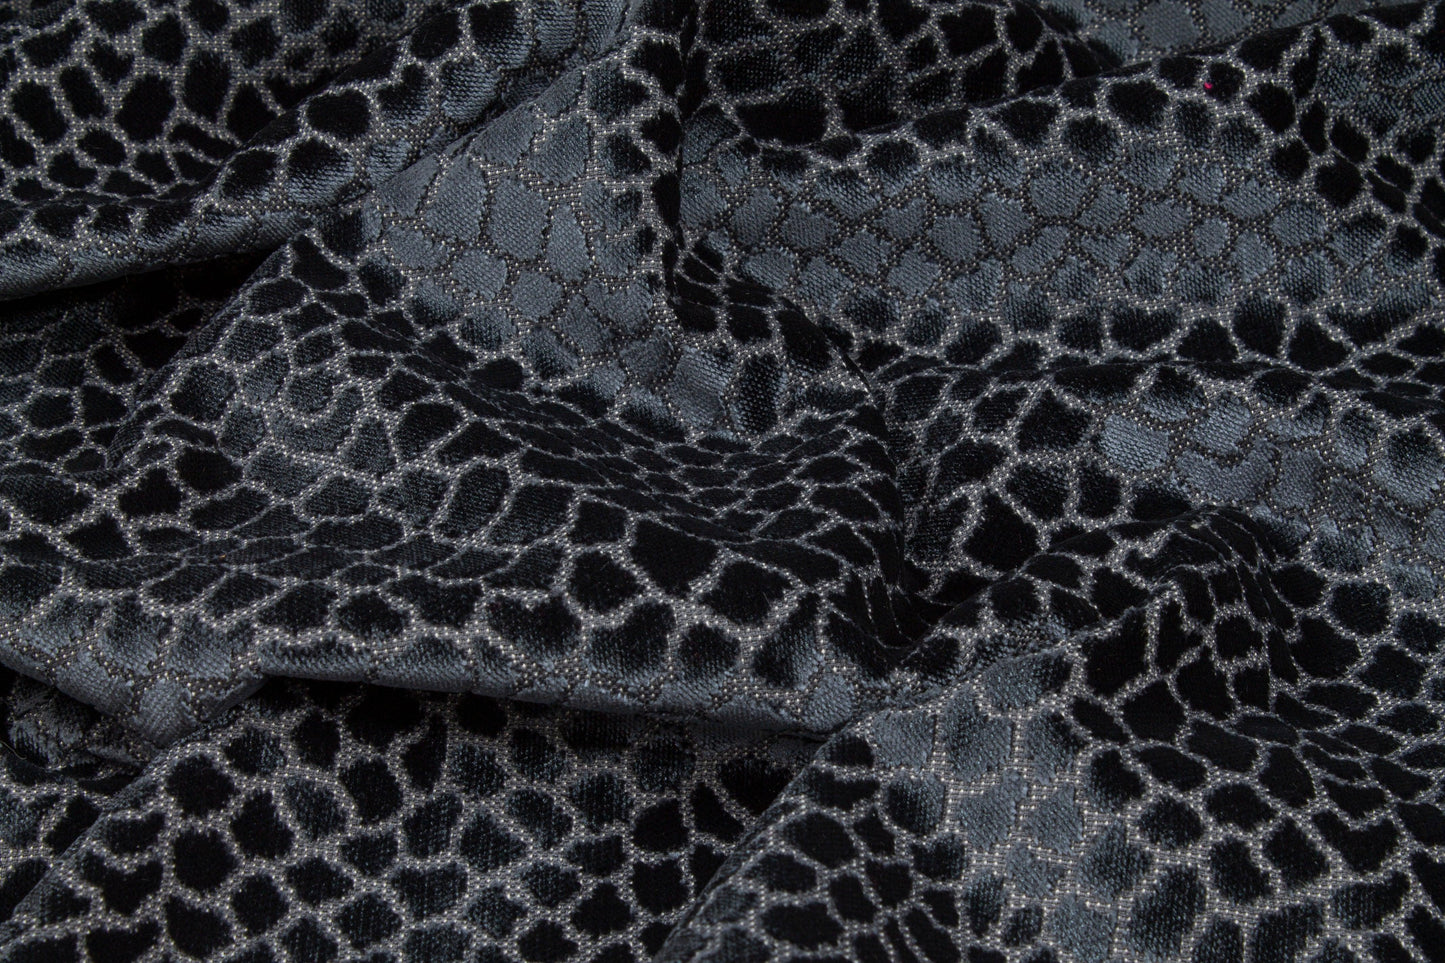 Blue-Gray Cut Velvet Upholstery - Prime Fabrics